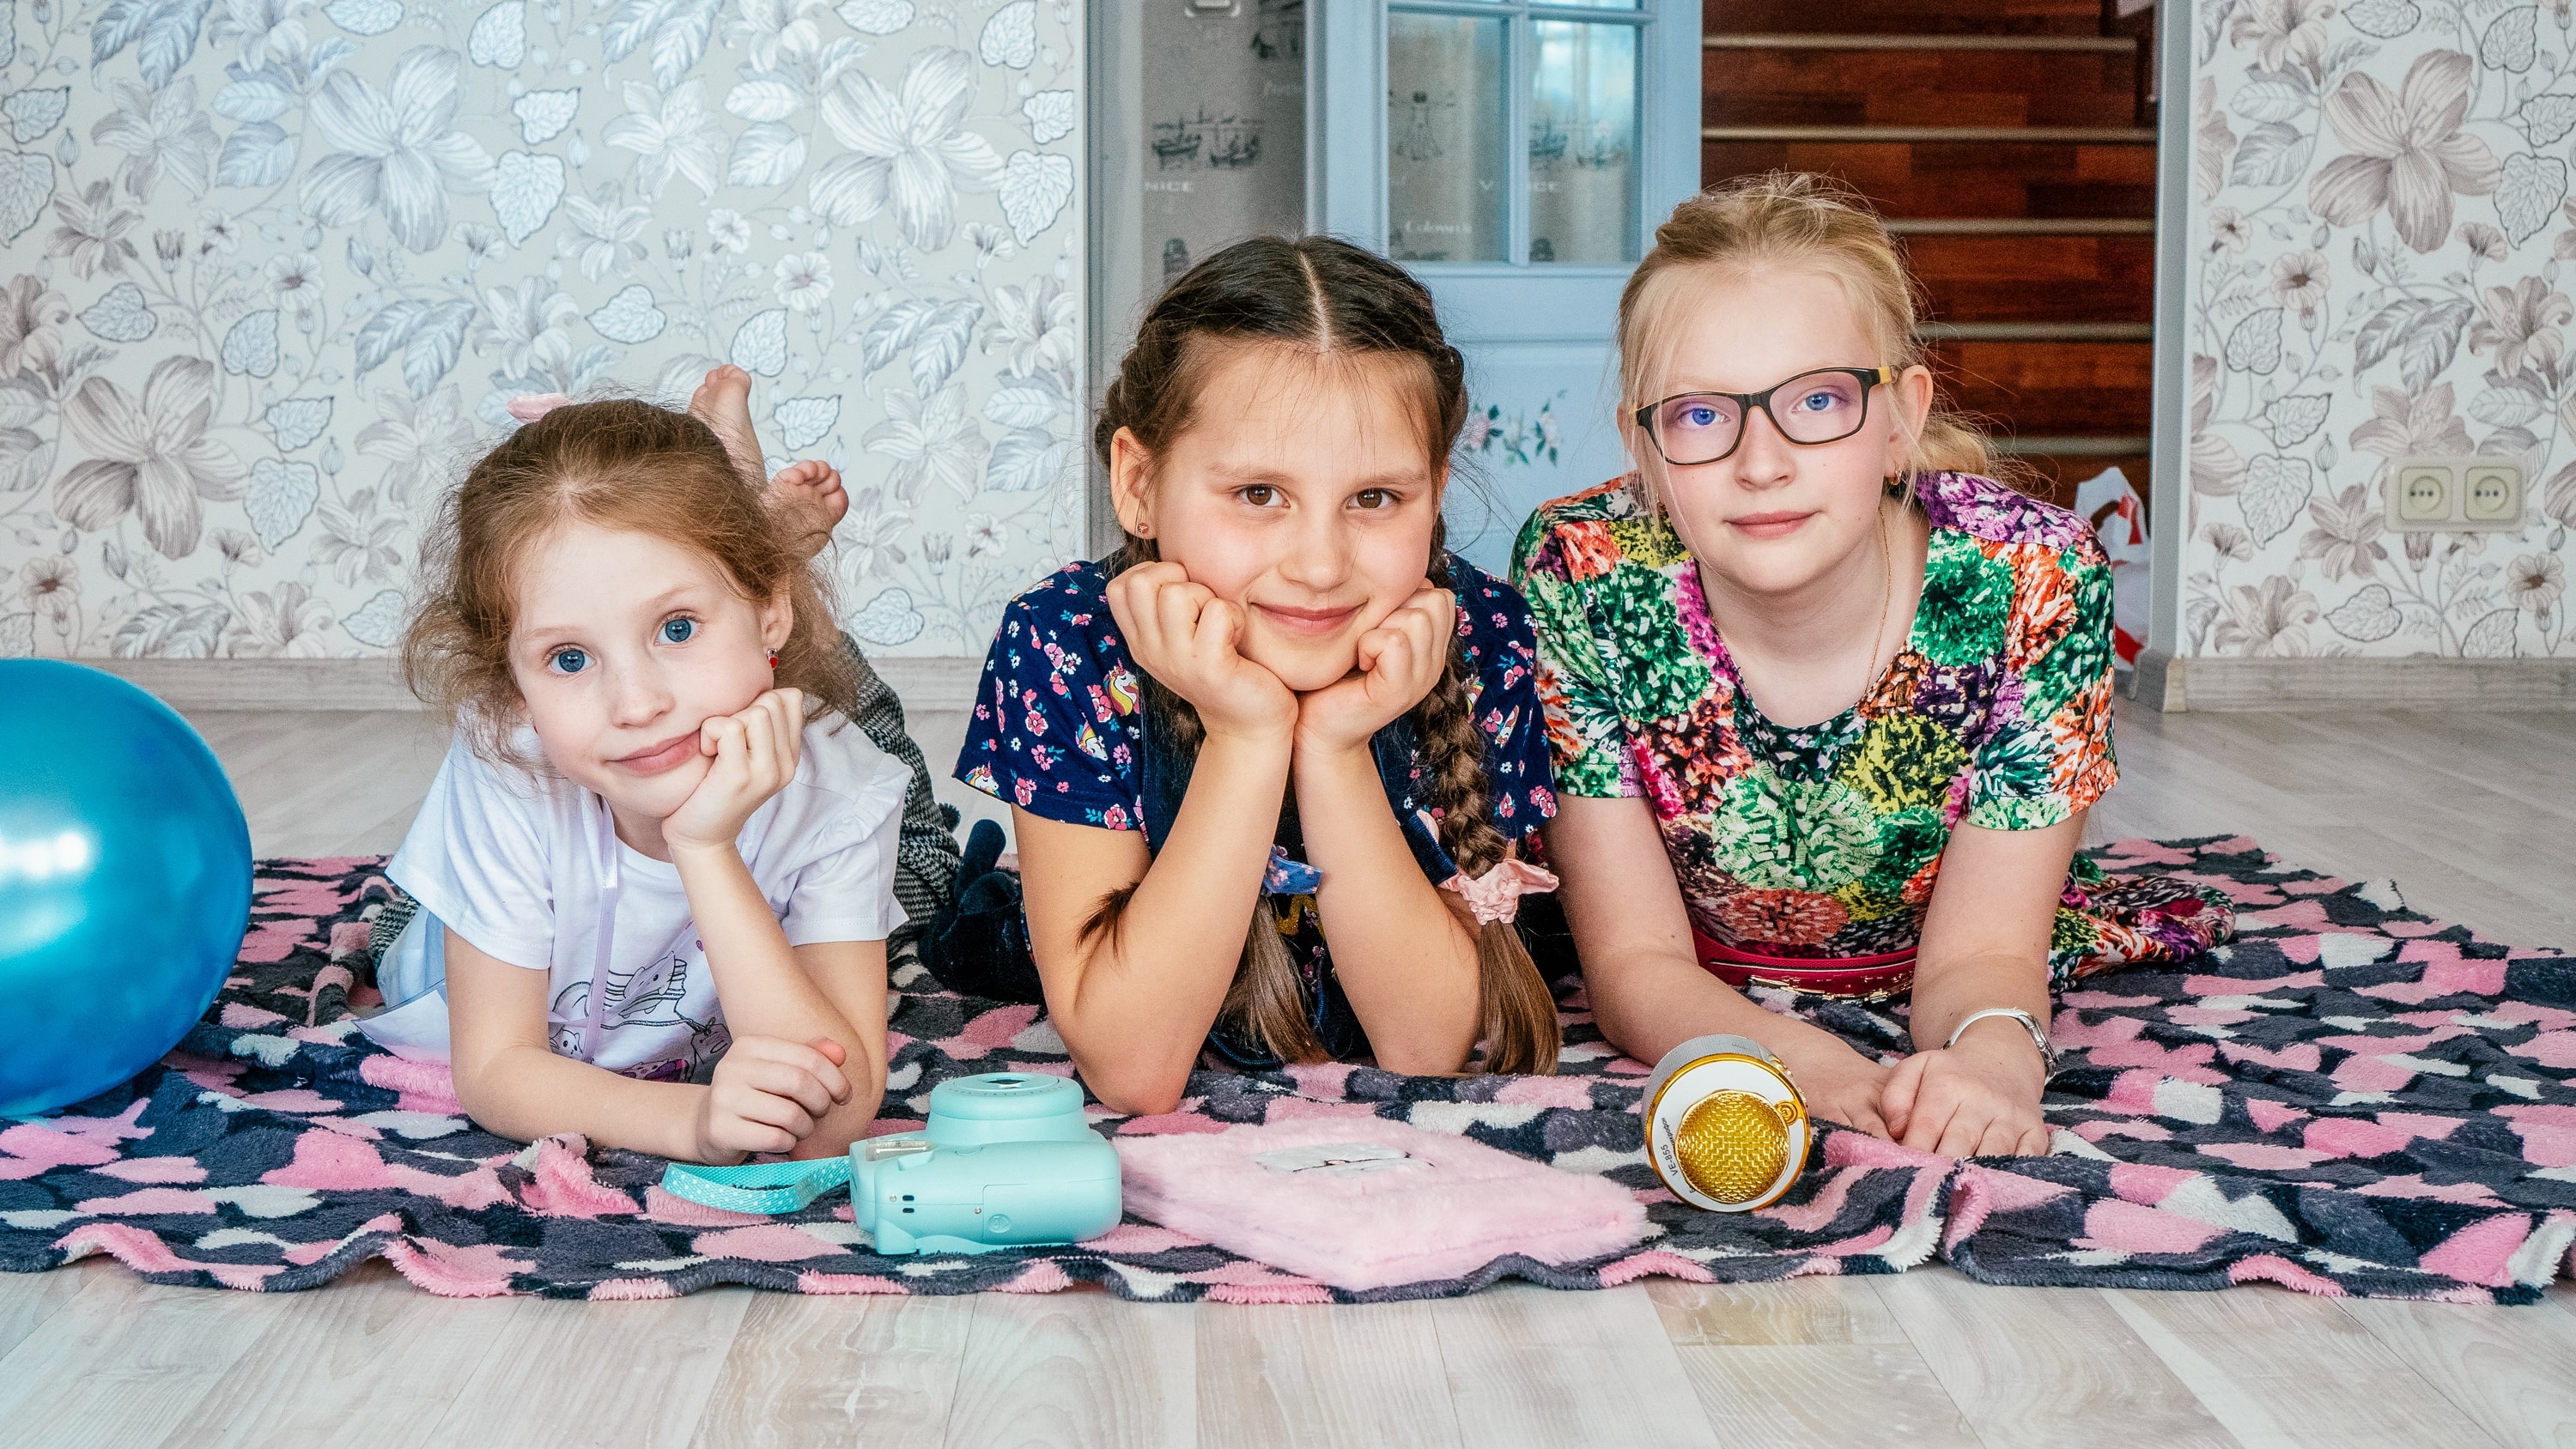 «Творческие каникулы для девочек Little Stars» – путевки в летний детский лагерь 2023, Санкт-Петербург, д. Марьино – 3.